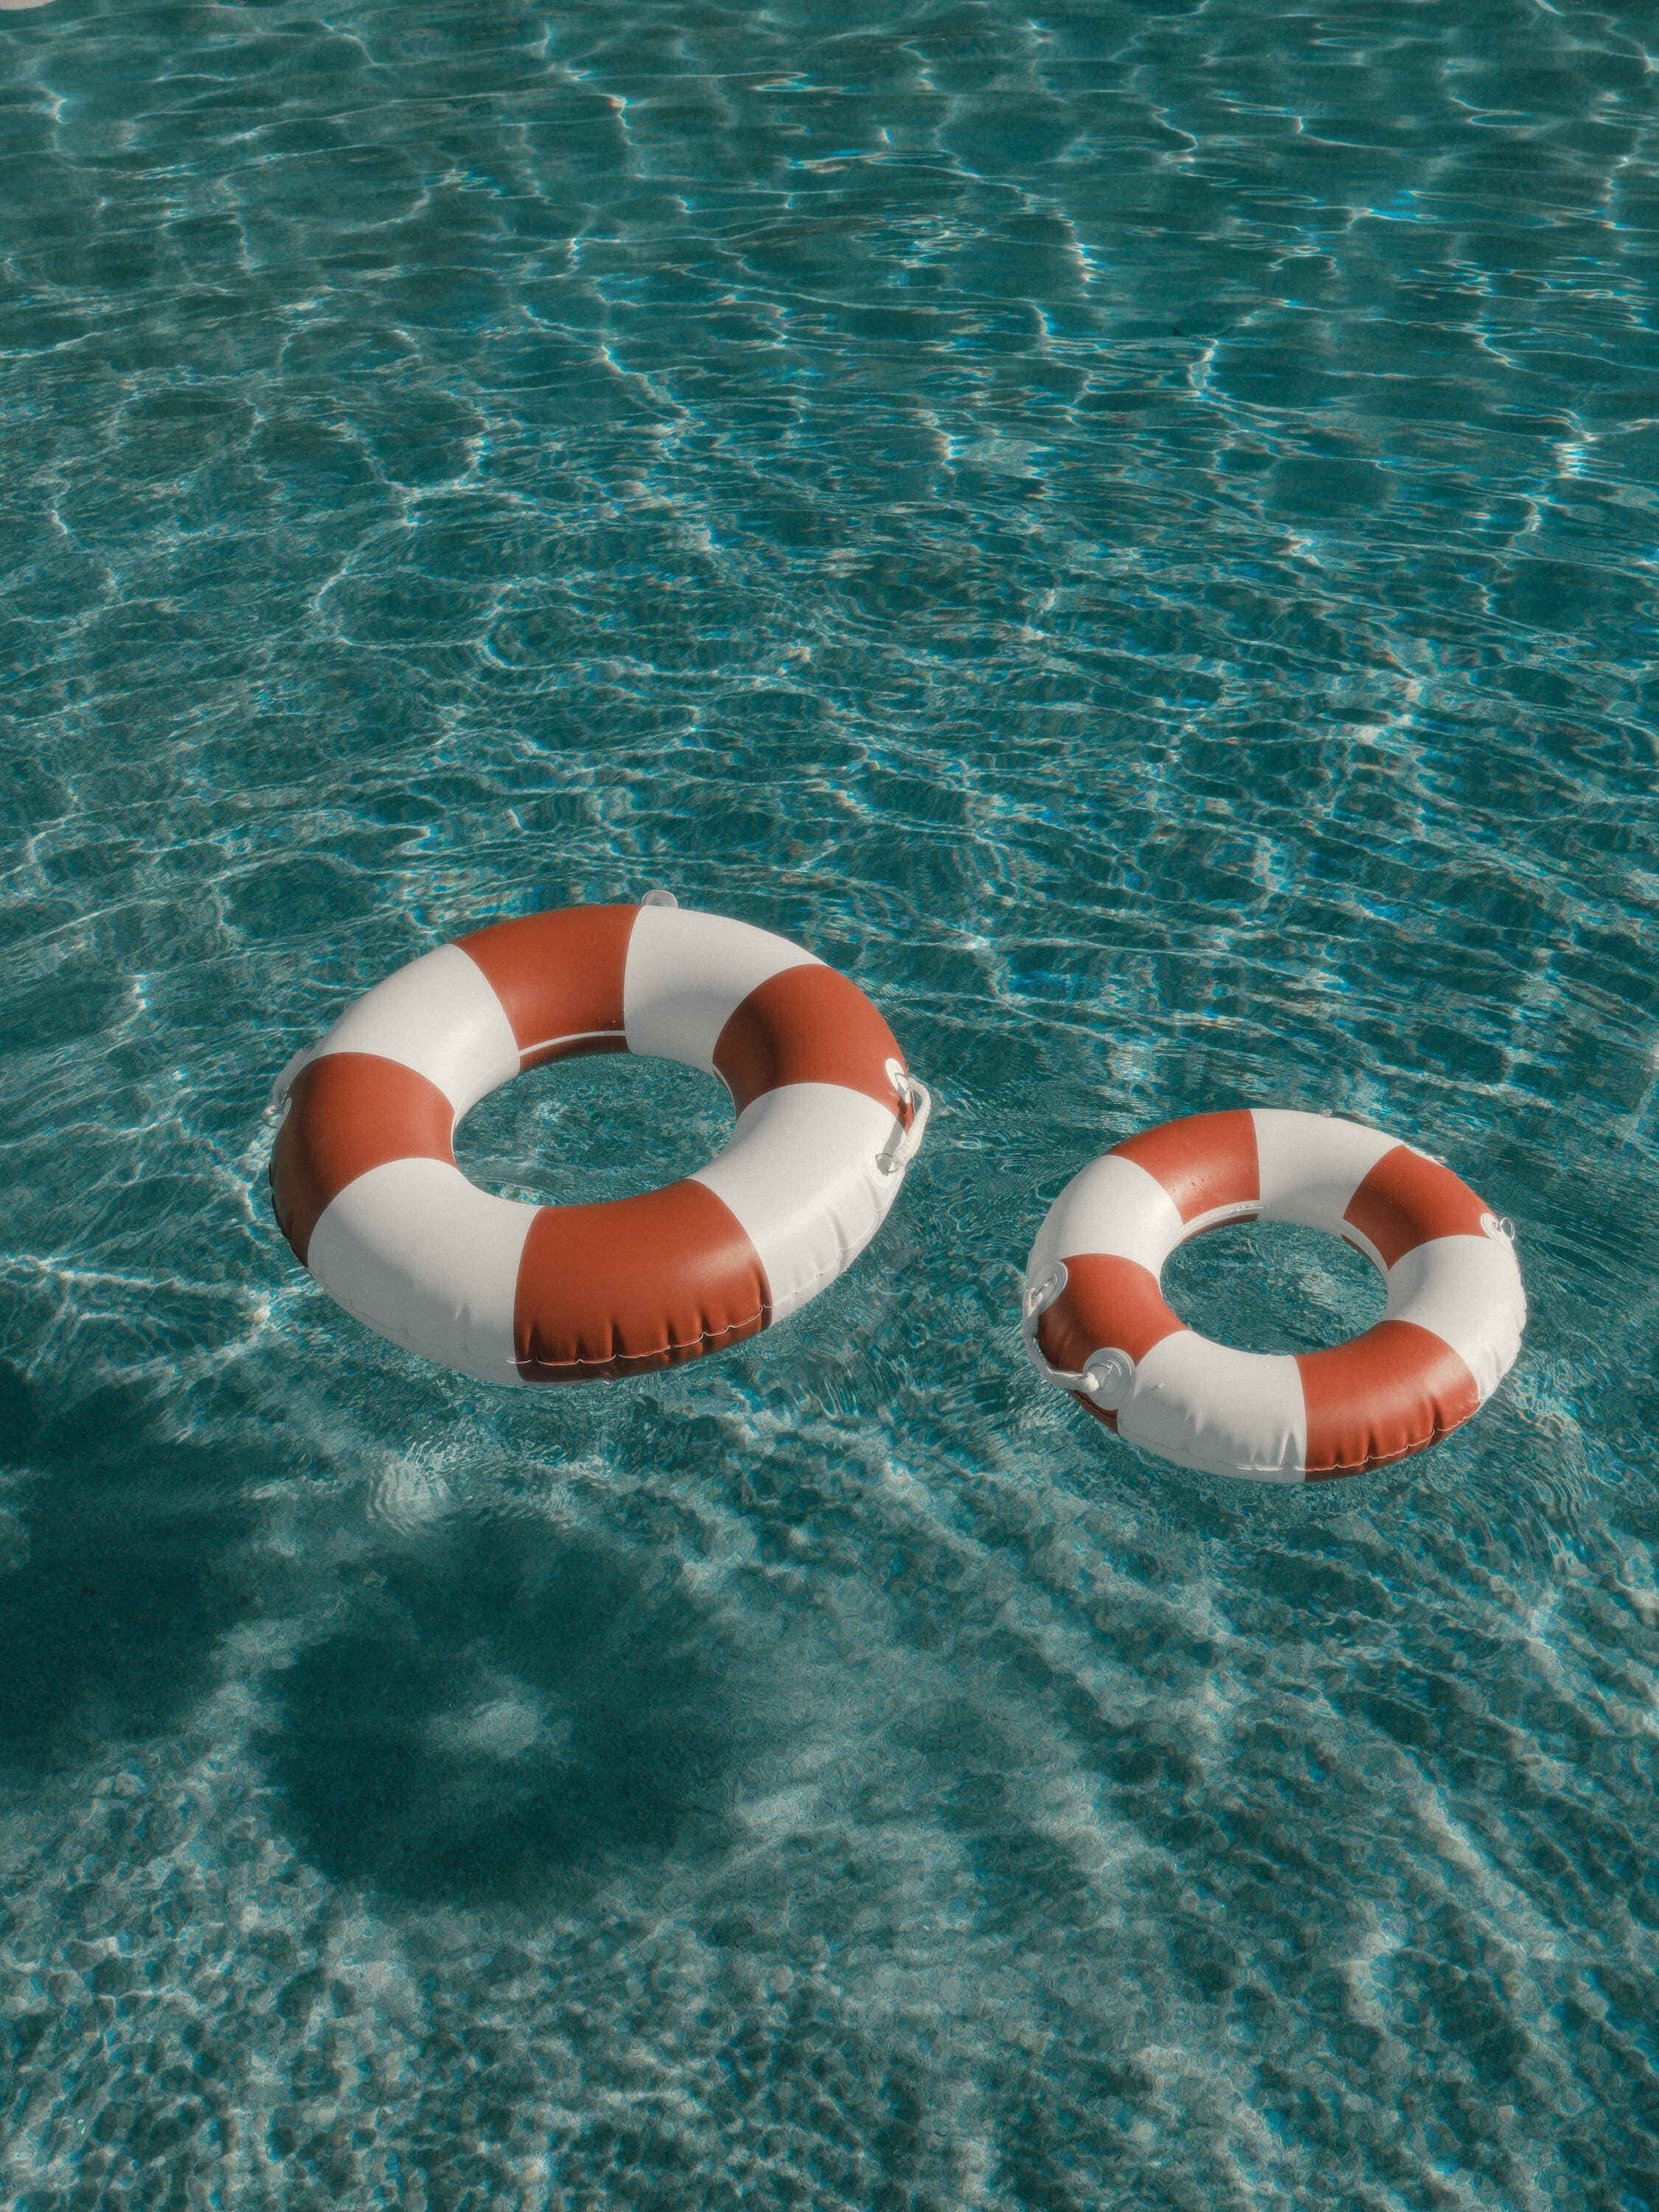 pool rings floating in a pool